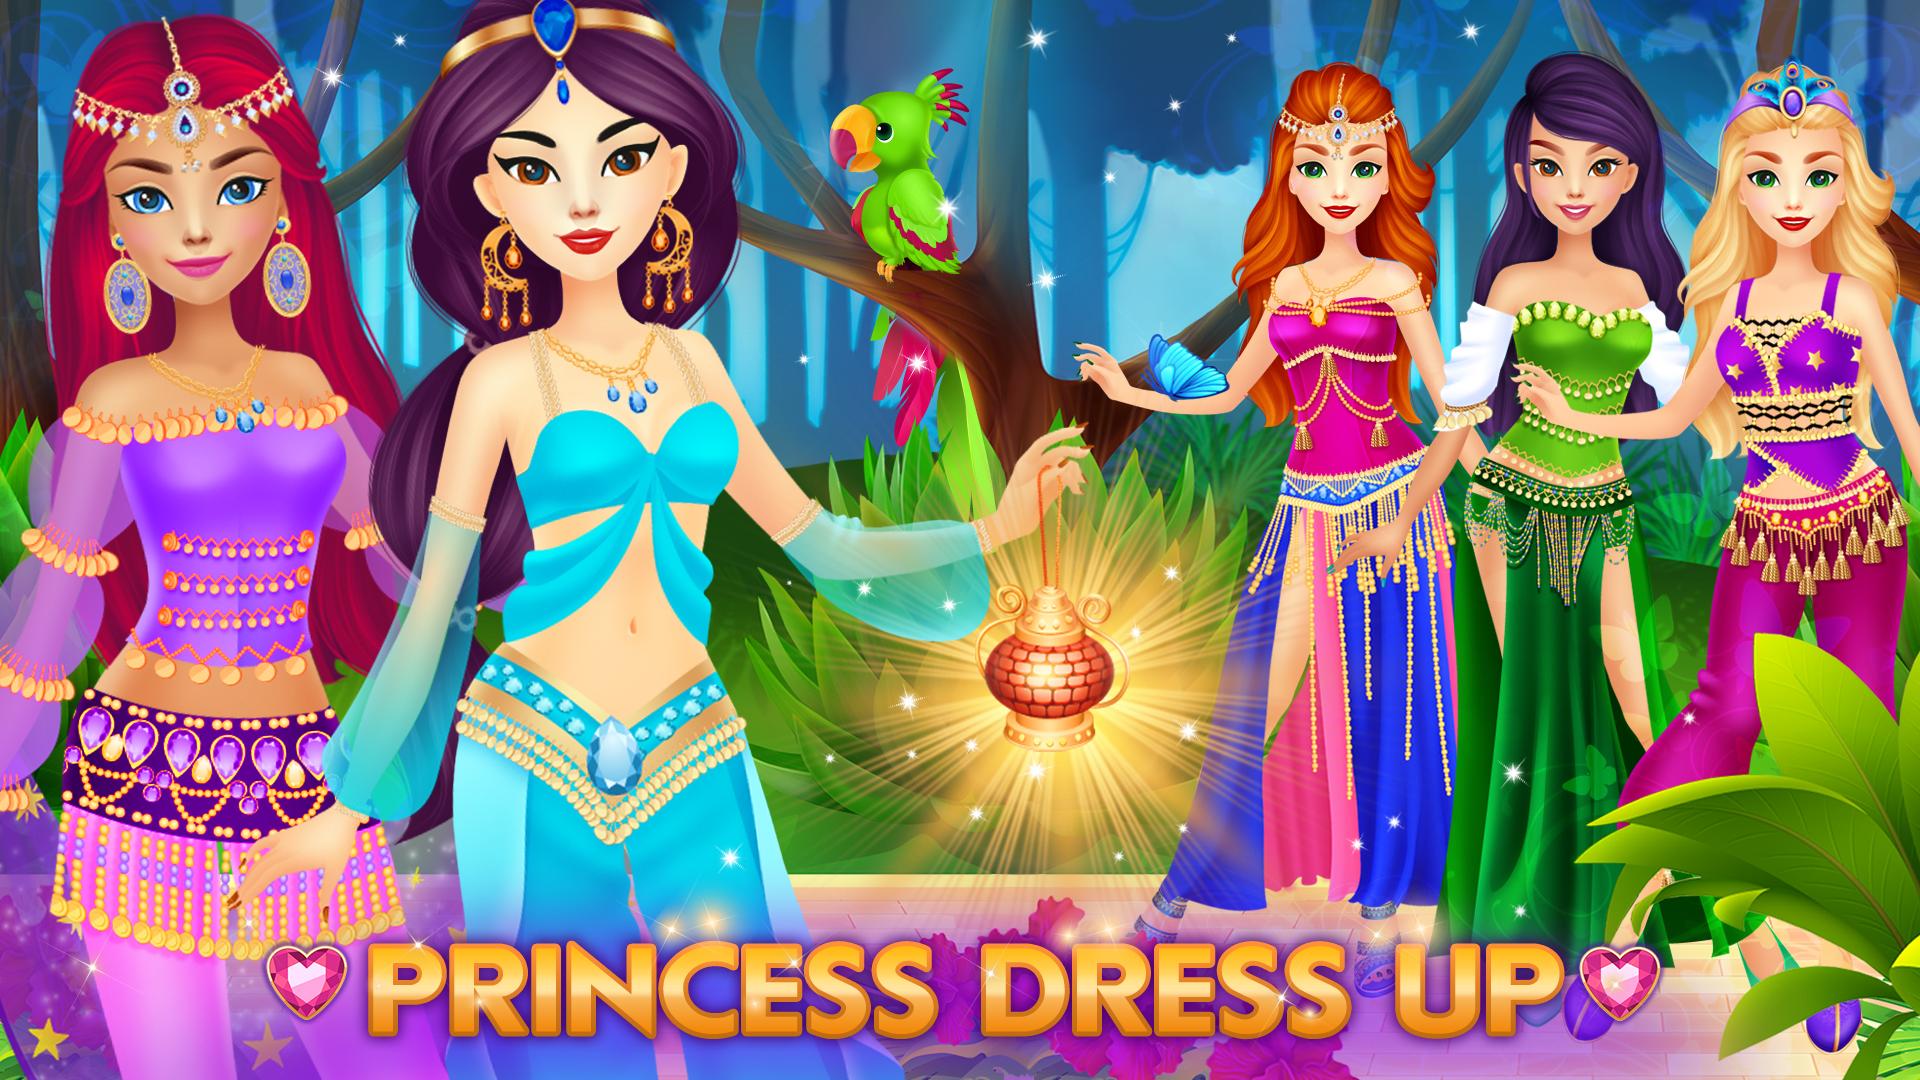 Бесплатный игра одевалка принцесс. Игра одевалки принцесс. Игра наряжать принцесс. Игры переодевалки принцесс. Одевалки принцесс Диснея.